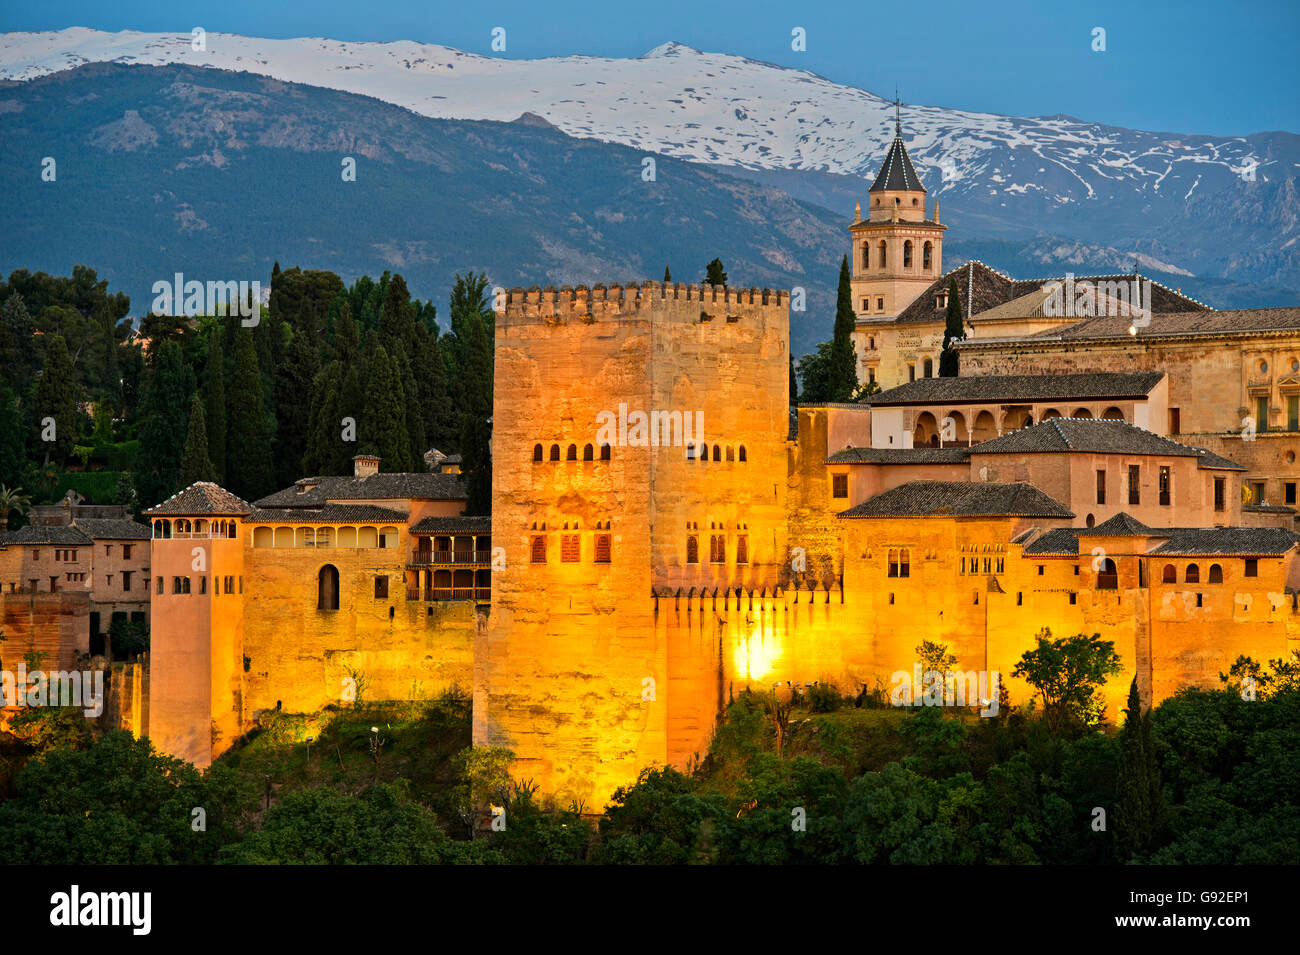 Abendlicht an der Alhambra, UNESCO World Heritage Site, gegen die Sierra Nevada Gebirgskette, Granada, Andalusien, Spanien Stockfoto